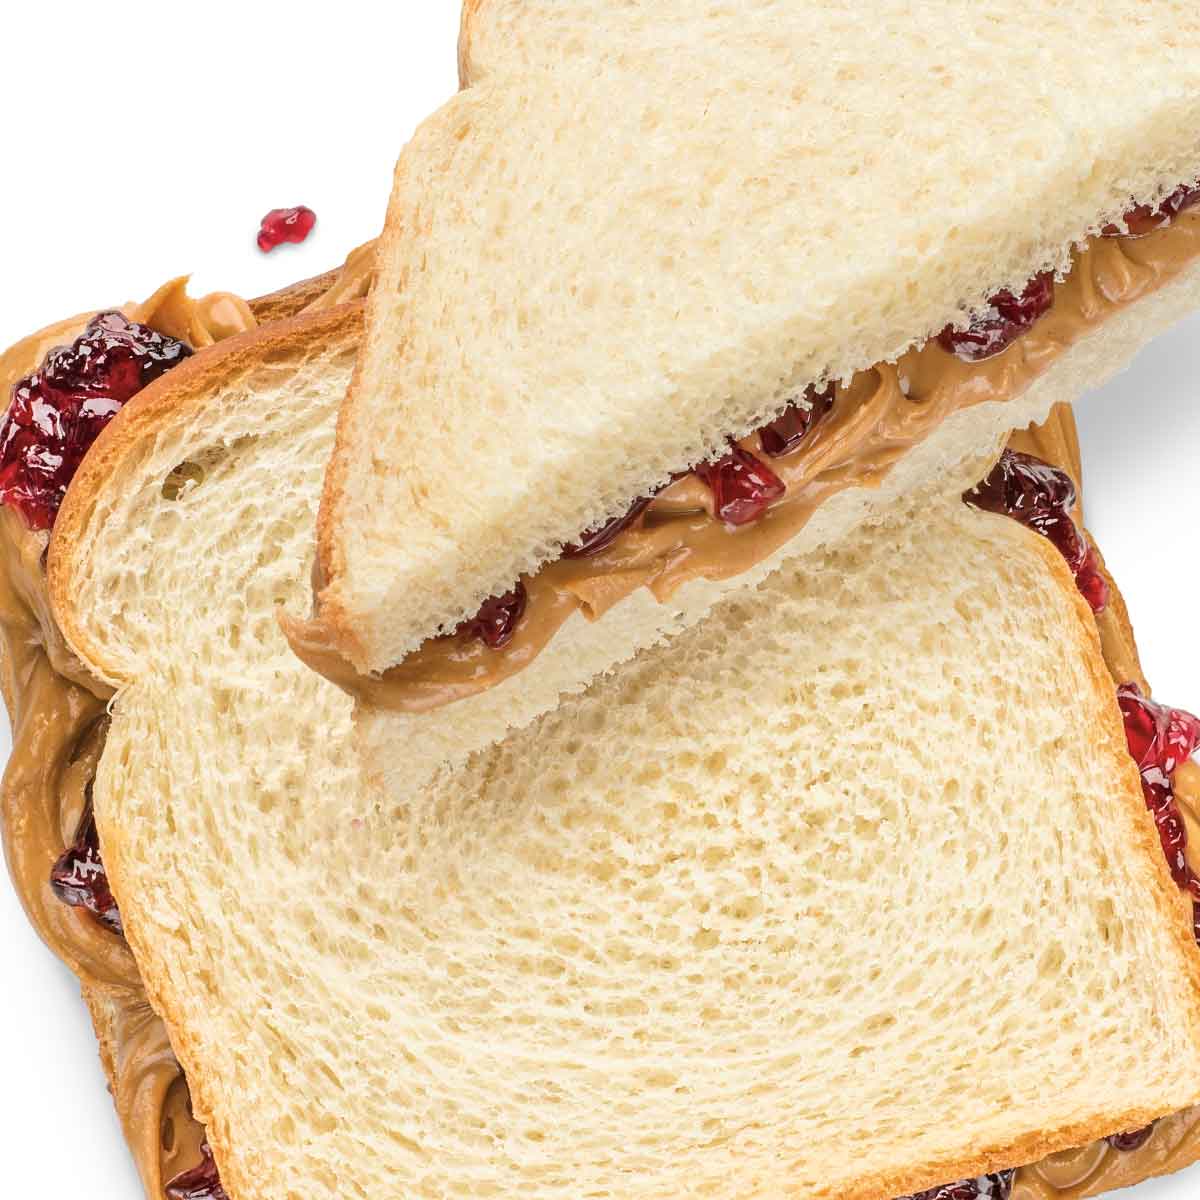 Wegmans peanut butter and jelly sandwich